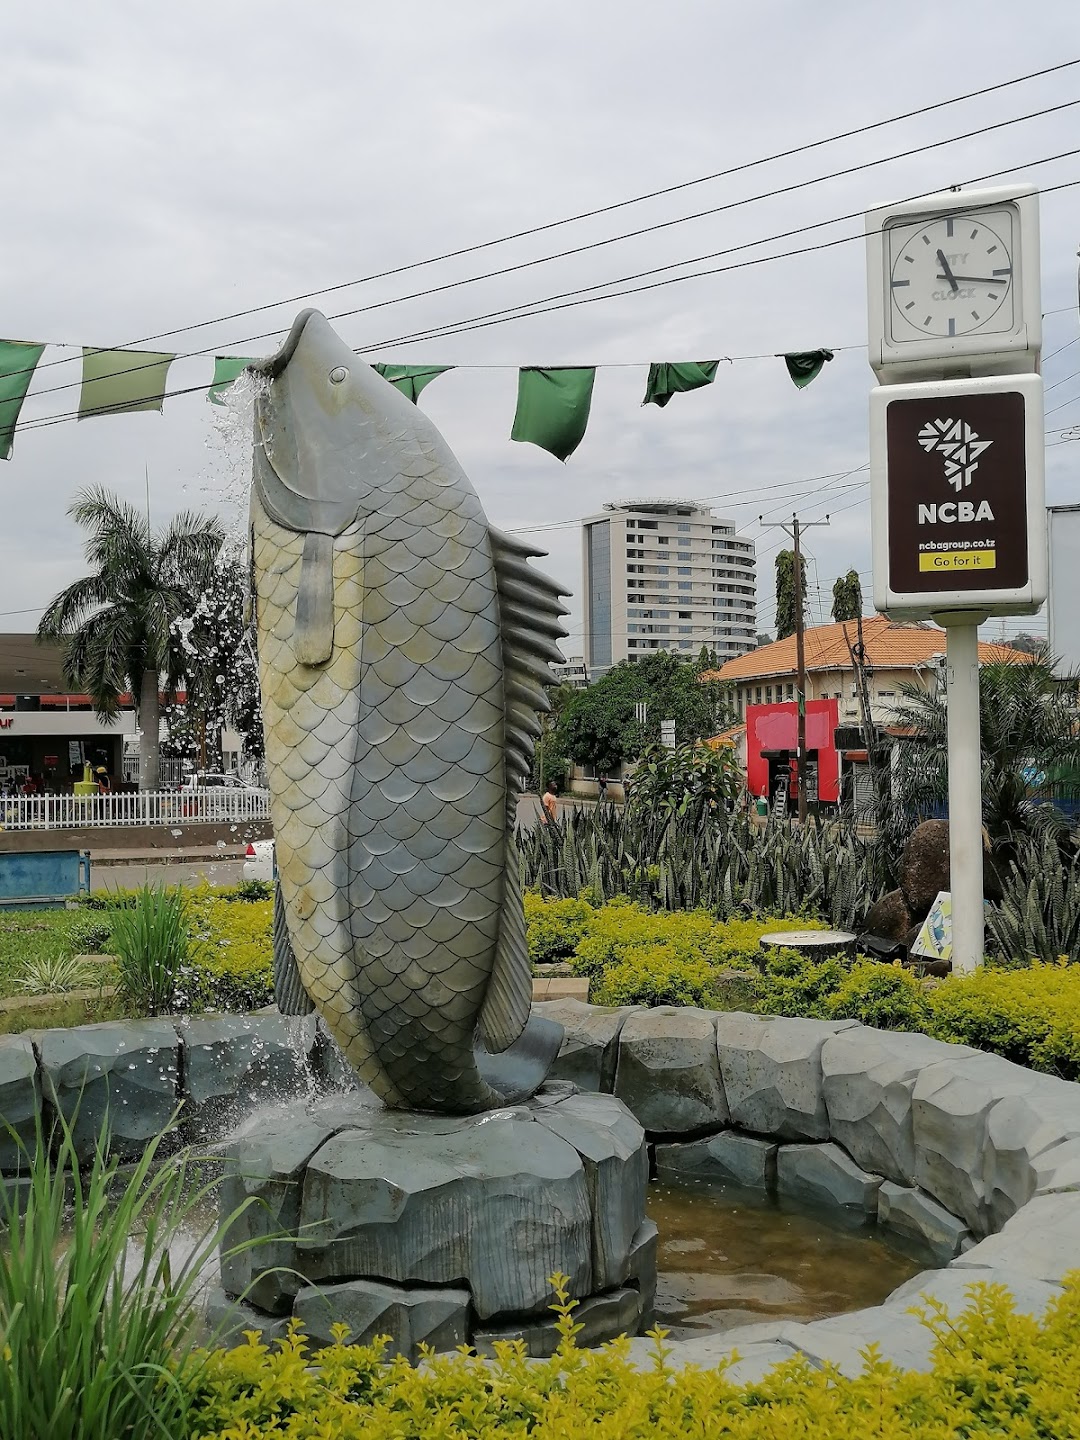 Samaki Round About - Mwanza city center